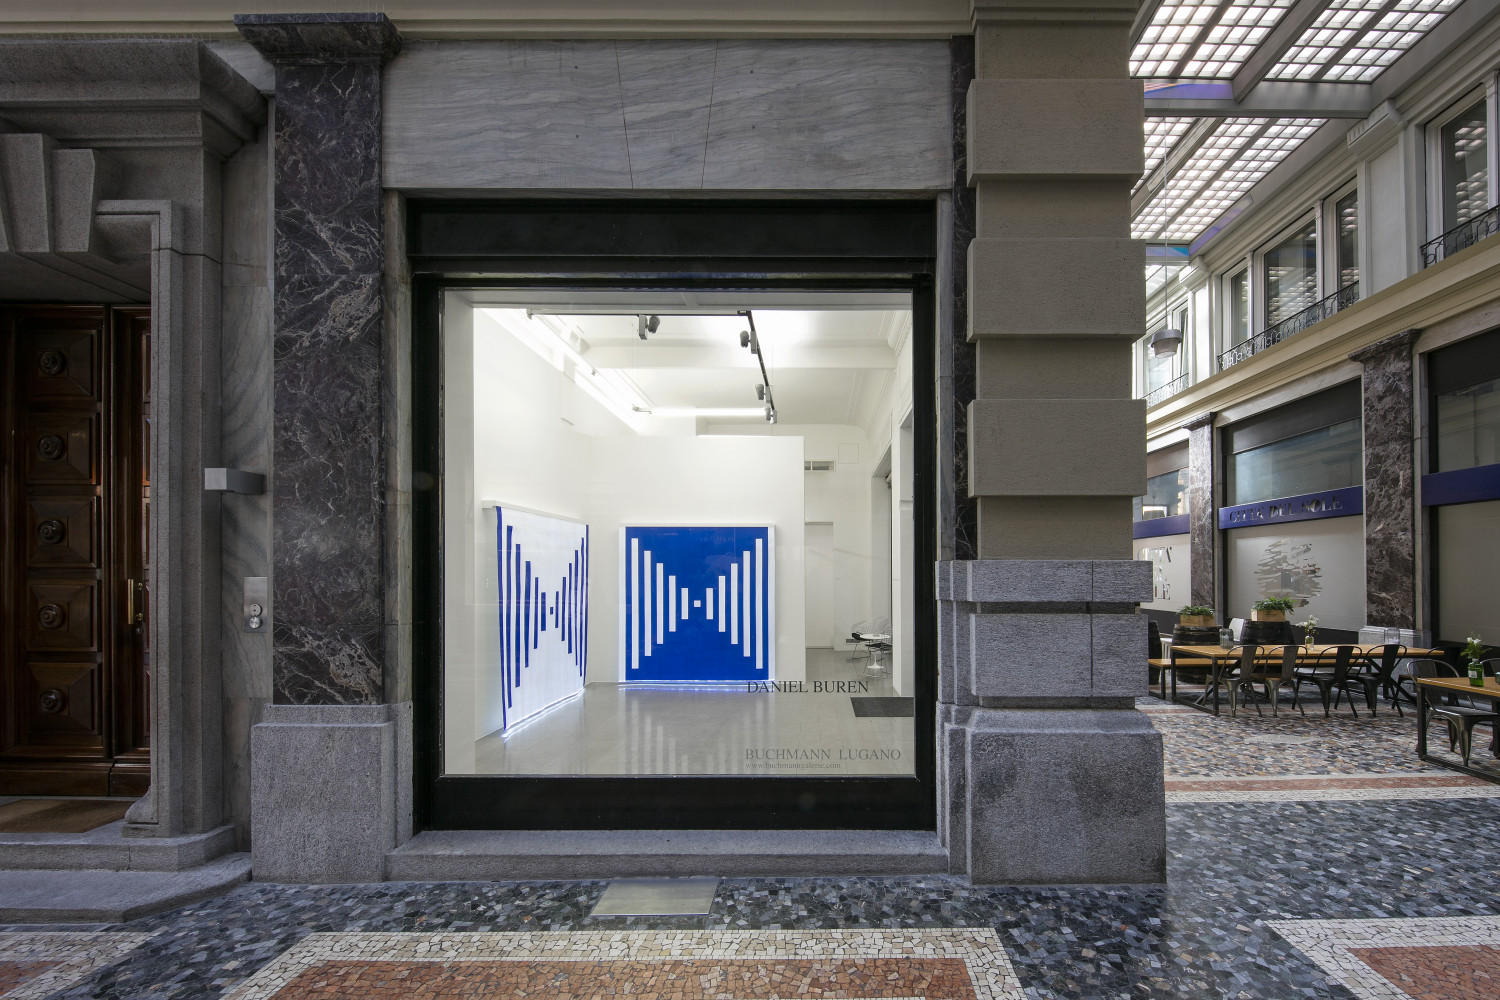 Daniel Buren, Installationsansicht, Buchmann Lugano, 2019